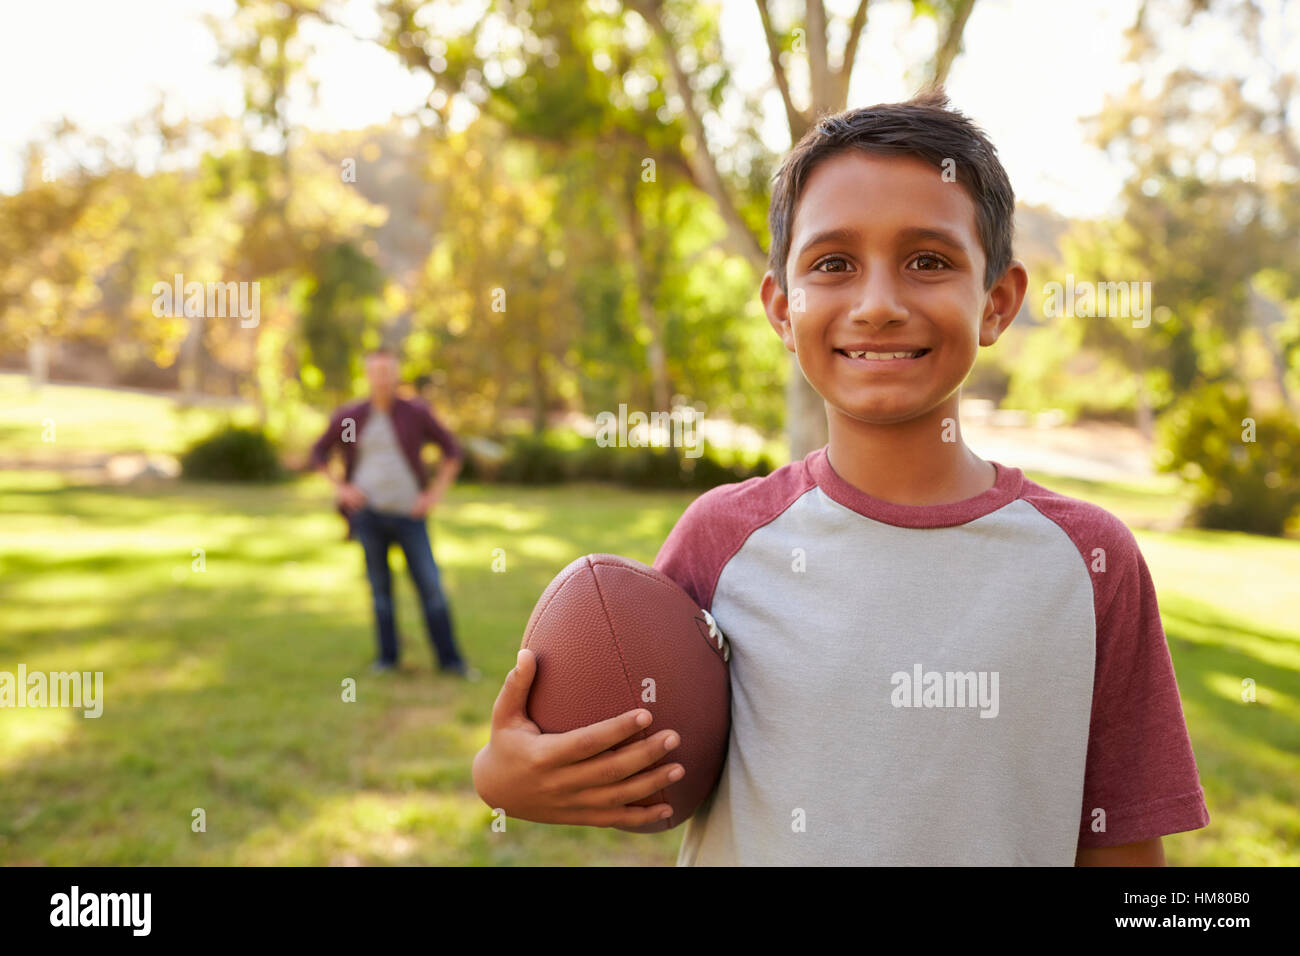 Portrait of boy holding football in park, papa en arrière-plan Banque D'Images